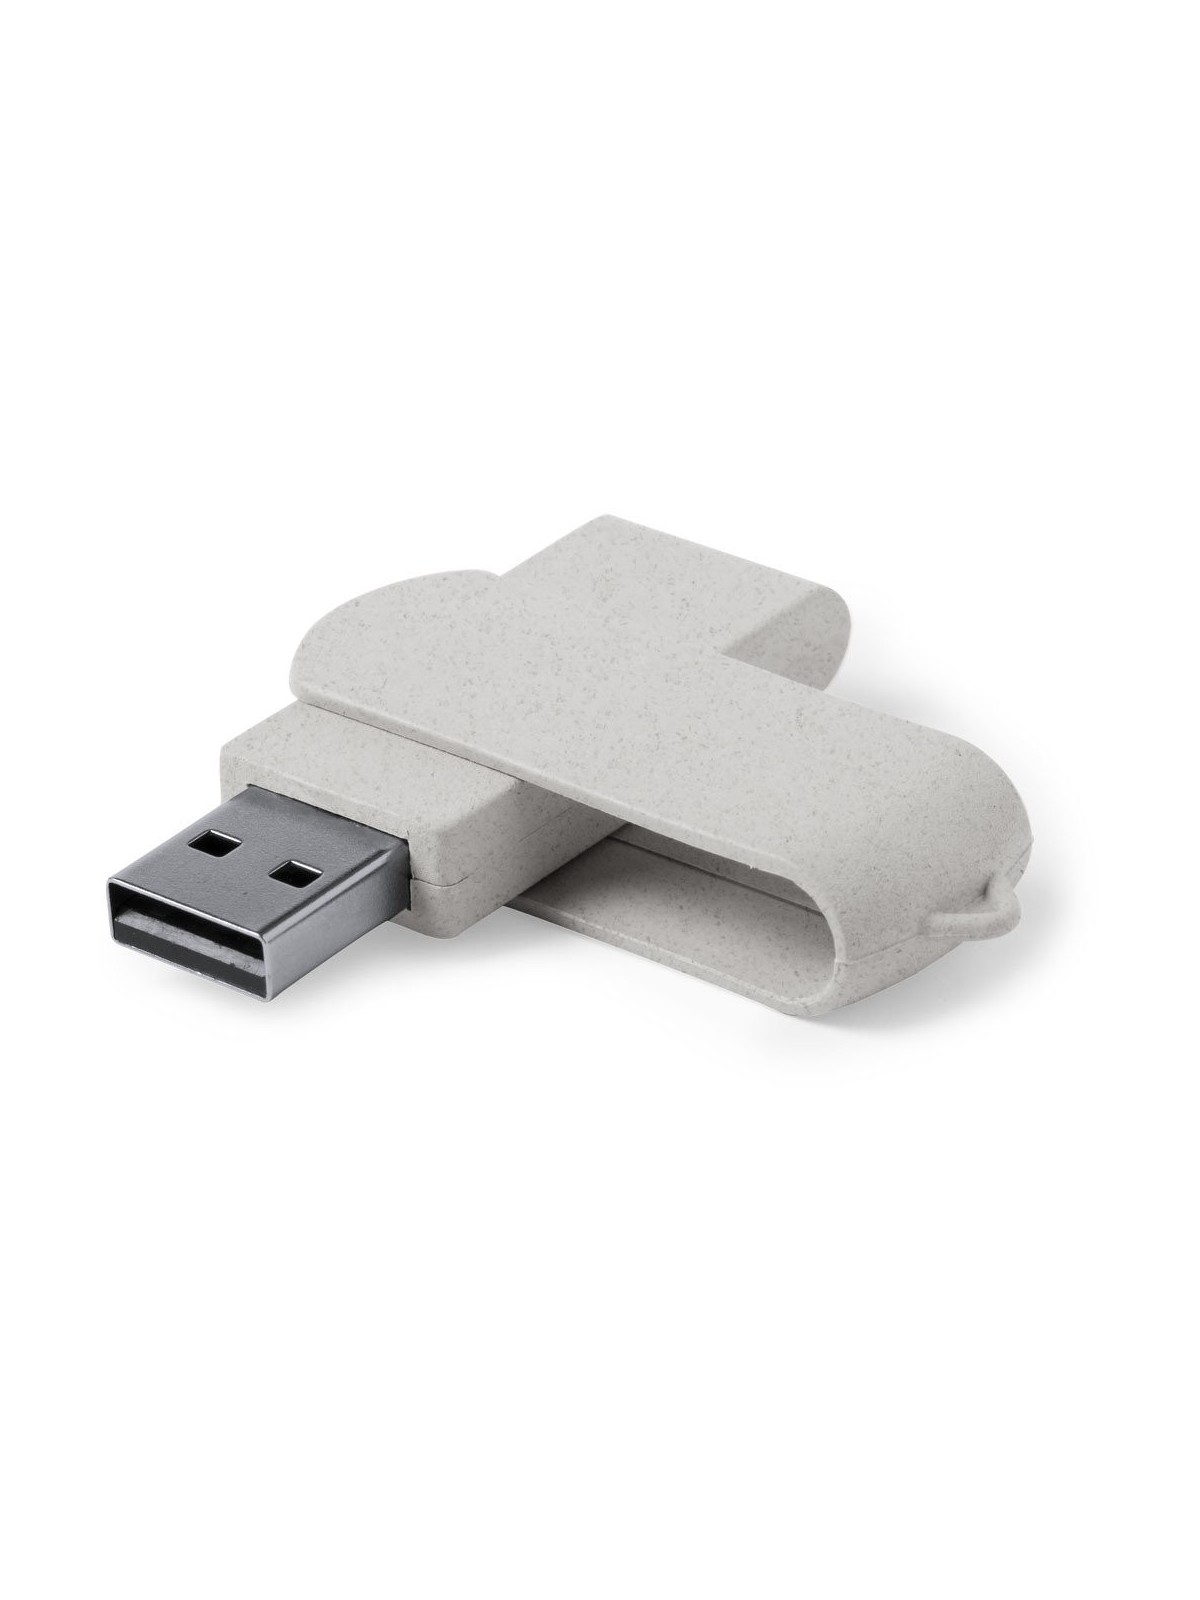 70-225 Clé USB écologique 16GB personnalisé